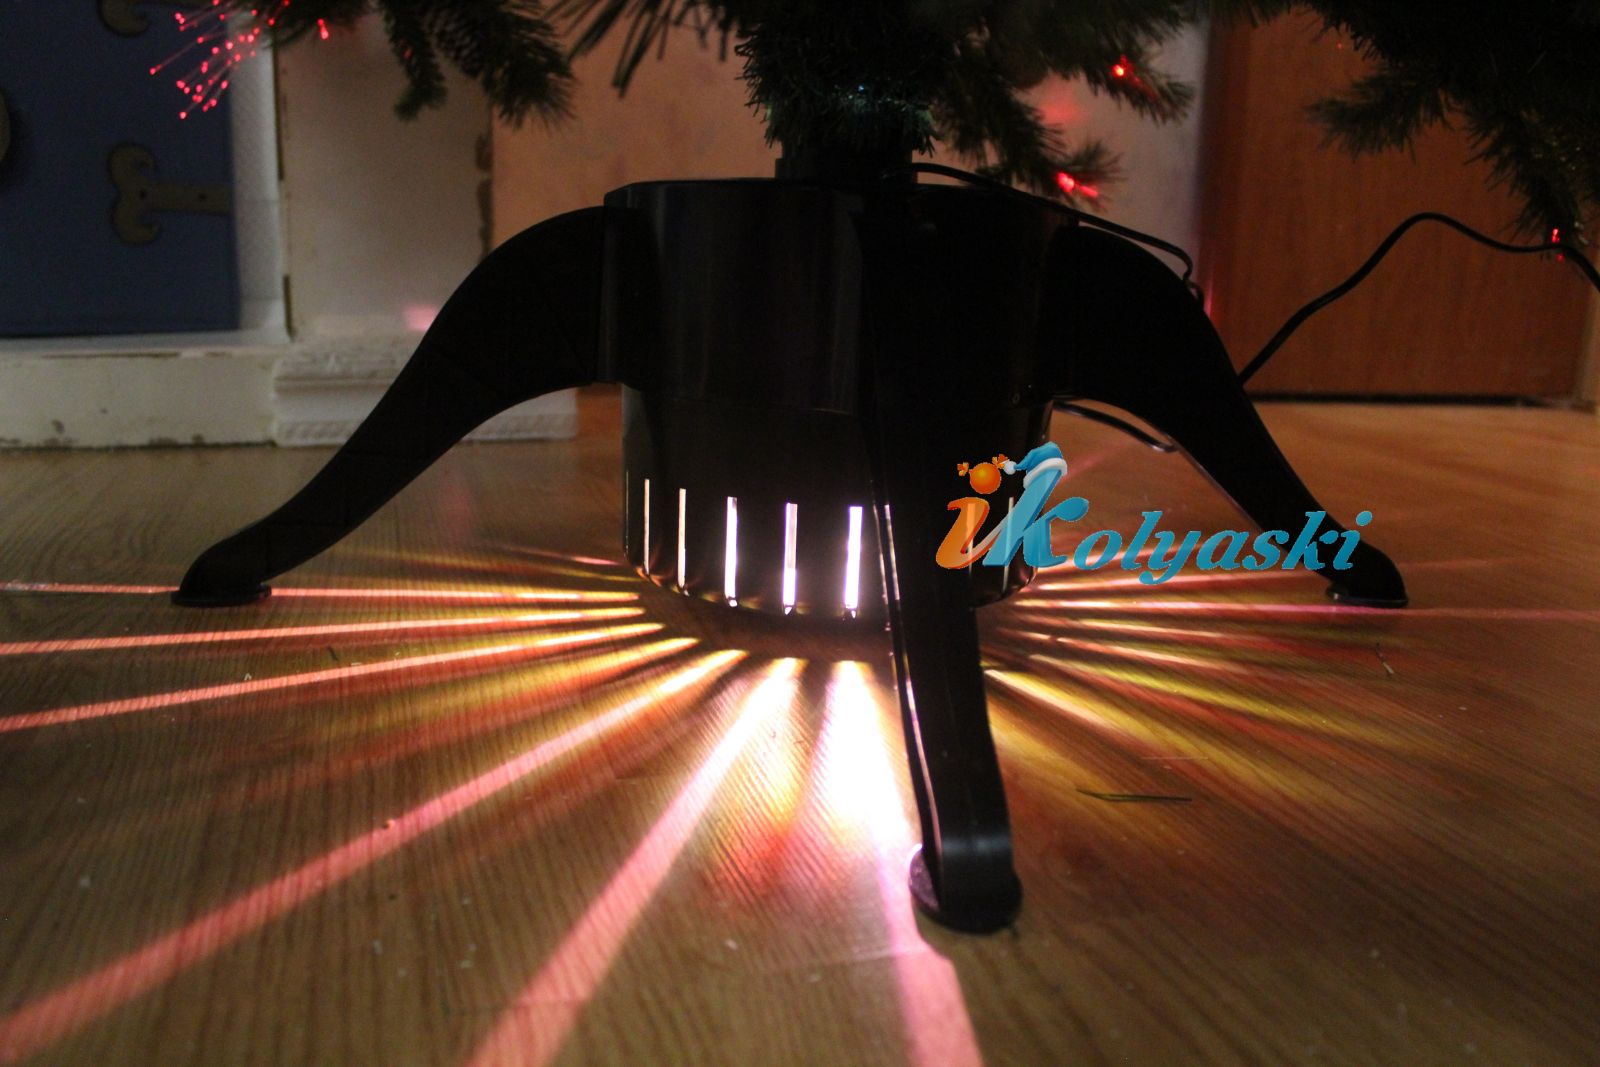 подставка новогодней елки-световода с многолучевой подсветкой входит в комплект